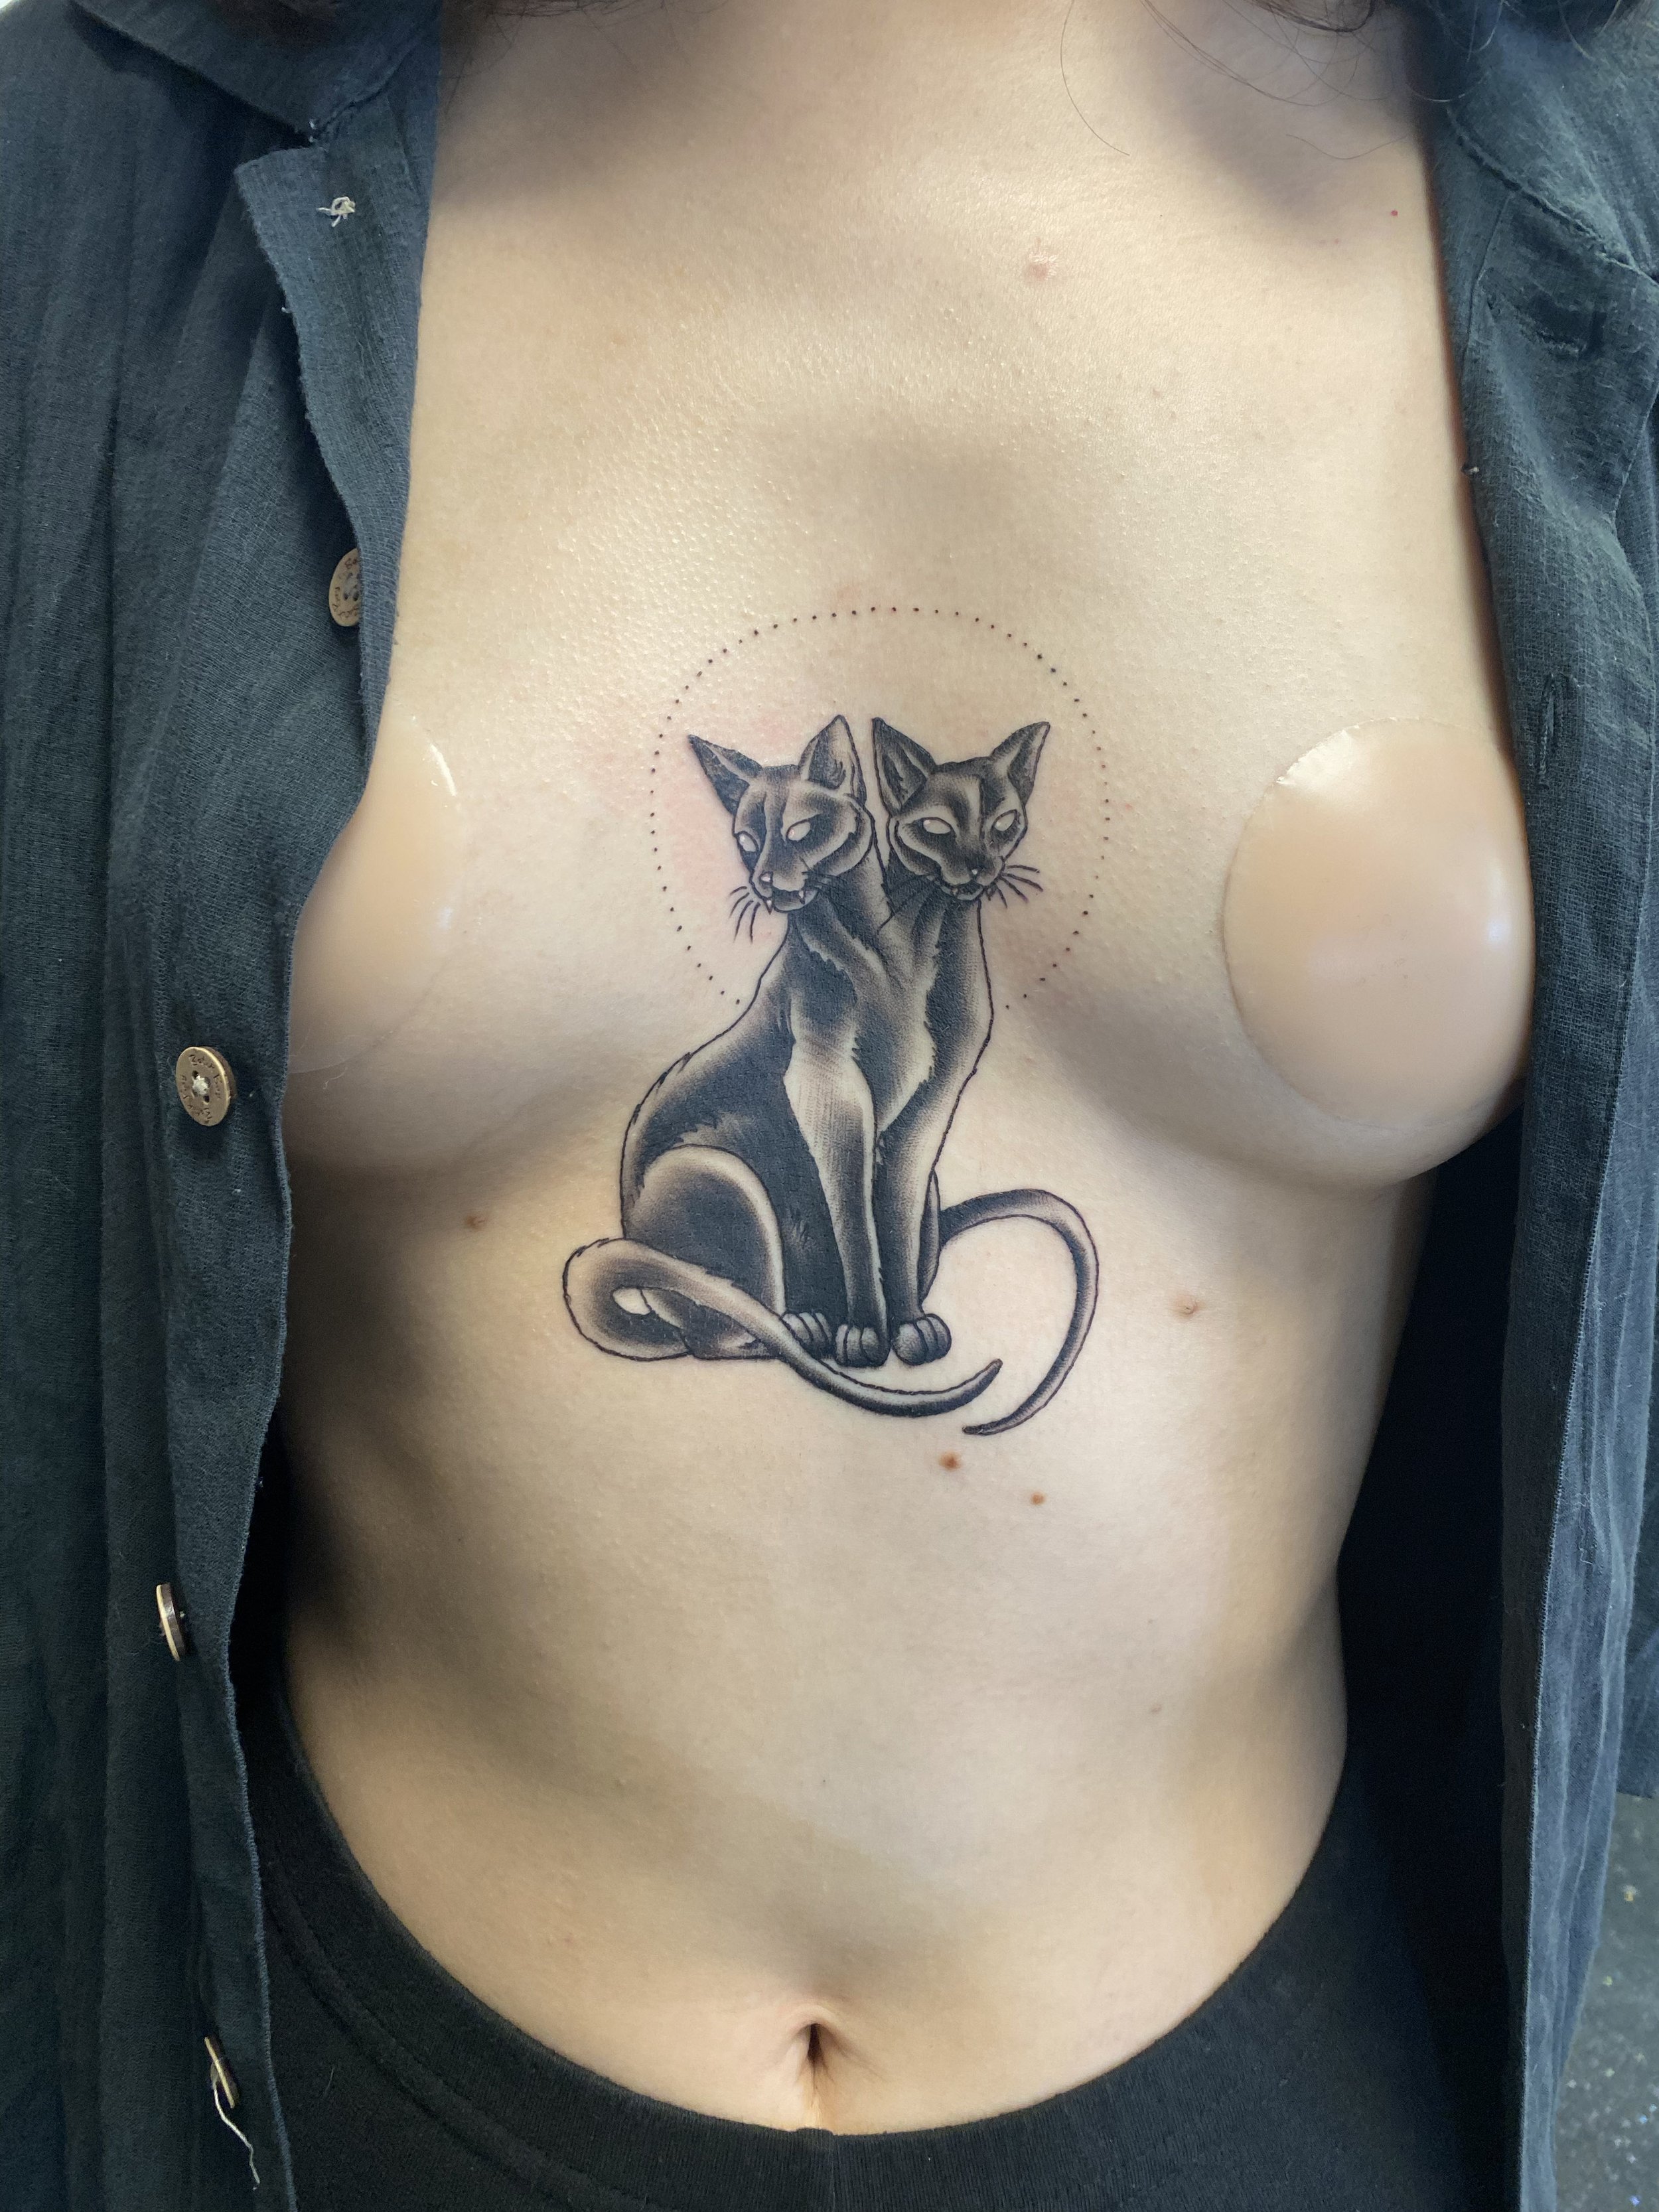 Luisa-Gonzalez-Tattoo-Black-Cats-Chest-Tattoo-Great-Wave-Tattoo-Austin-Texas_0667 2.jpg